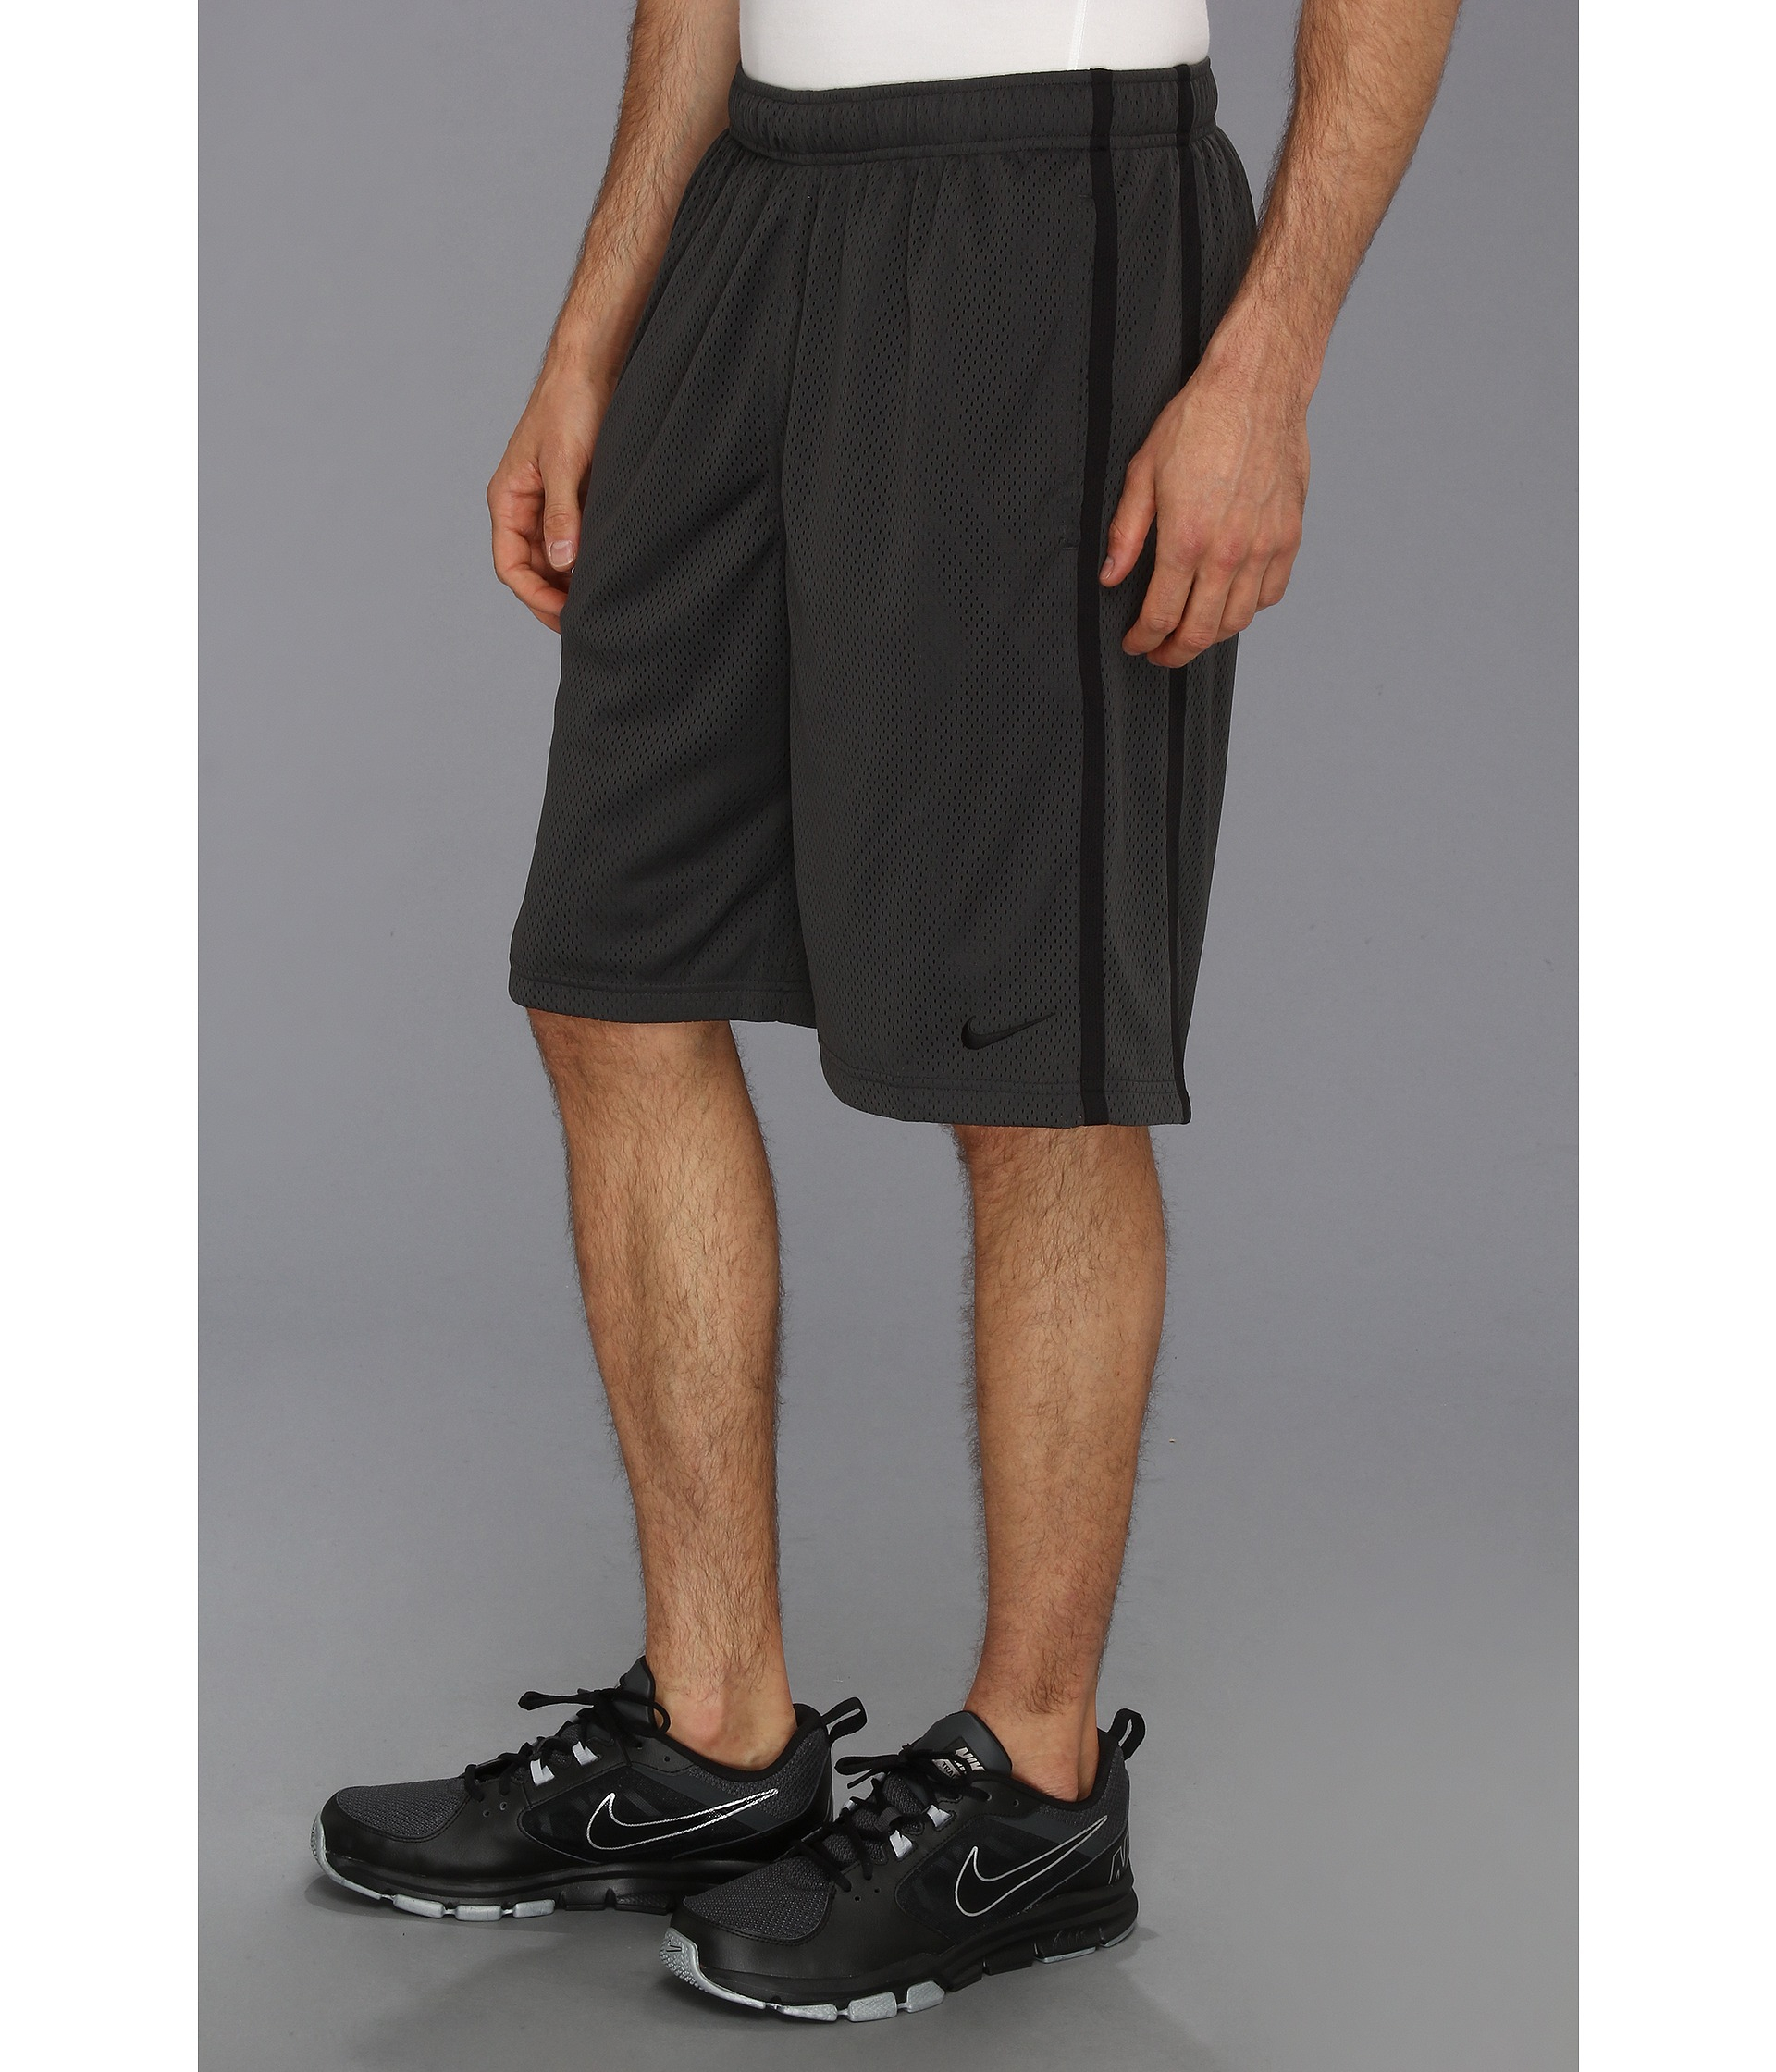 Nike Monster Mesh Short in Anthracite/Black/Black (Black) for Men - Lyst